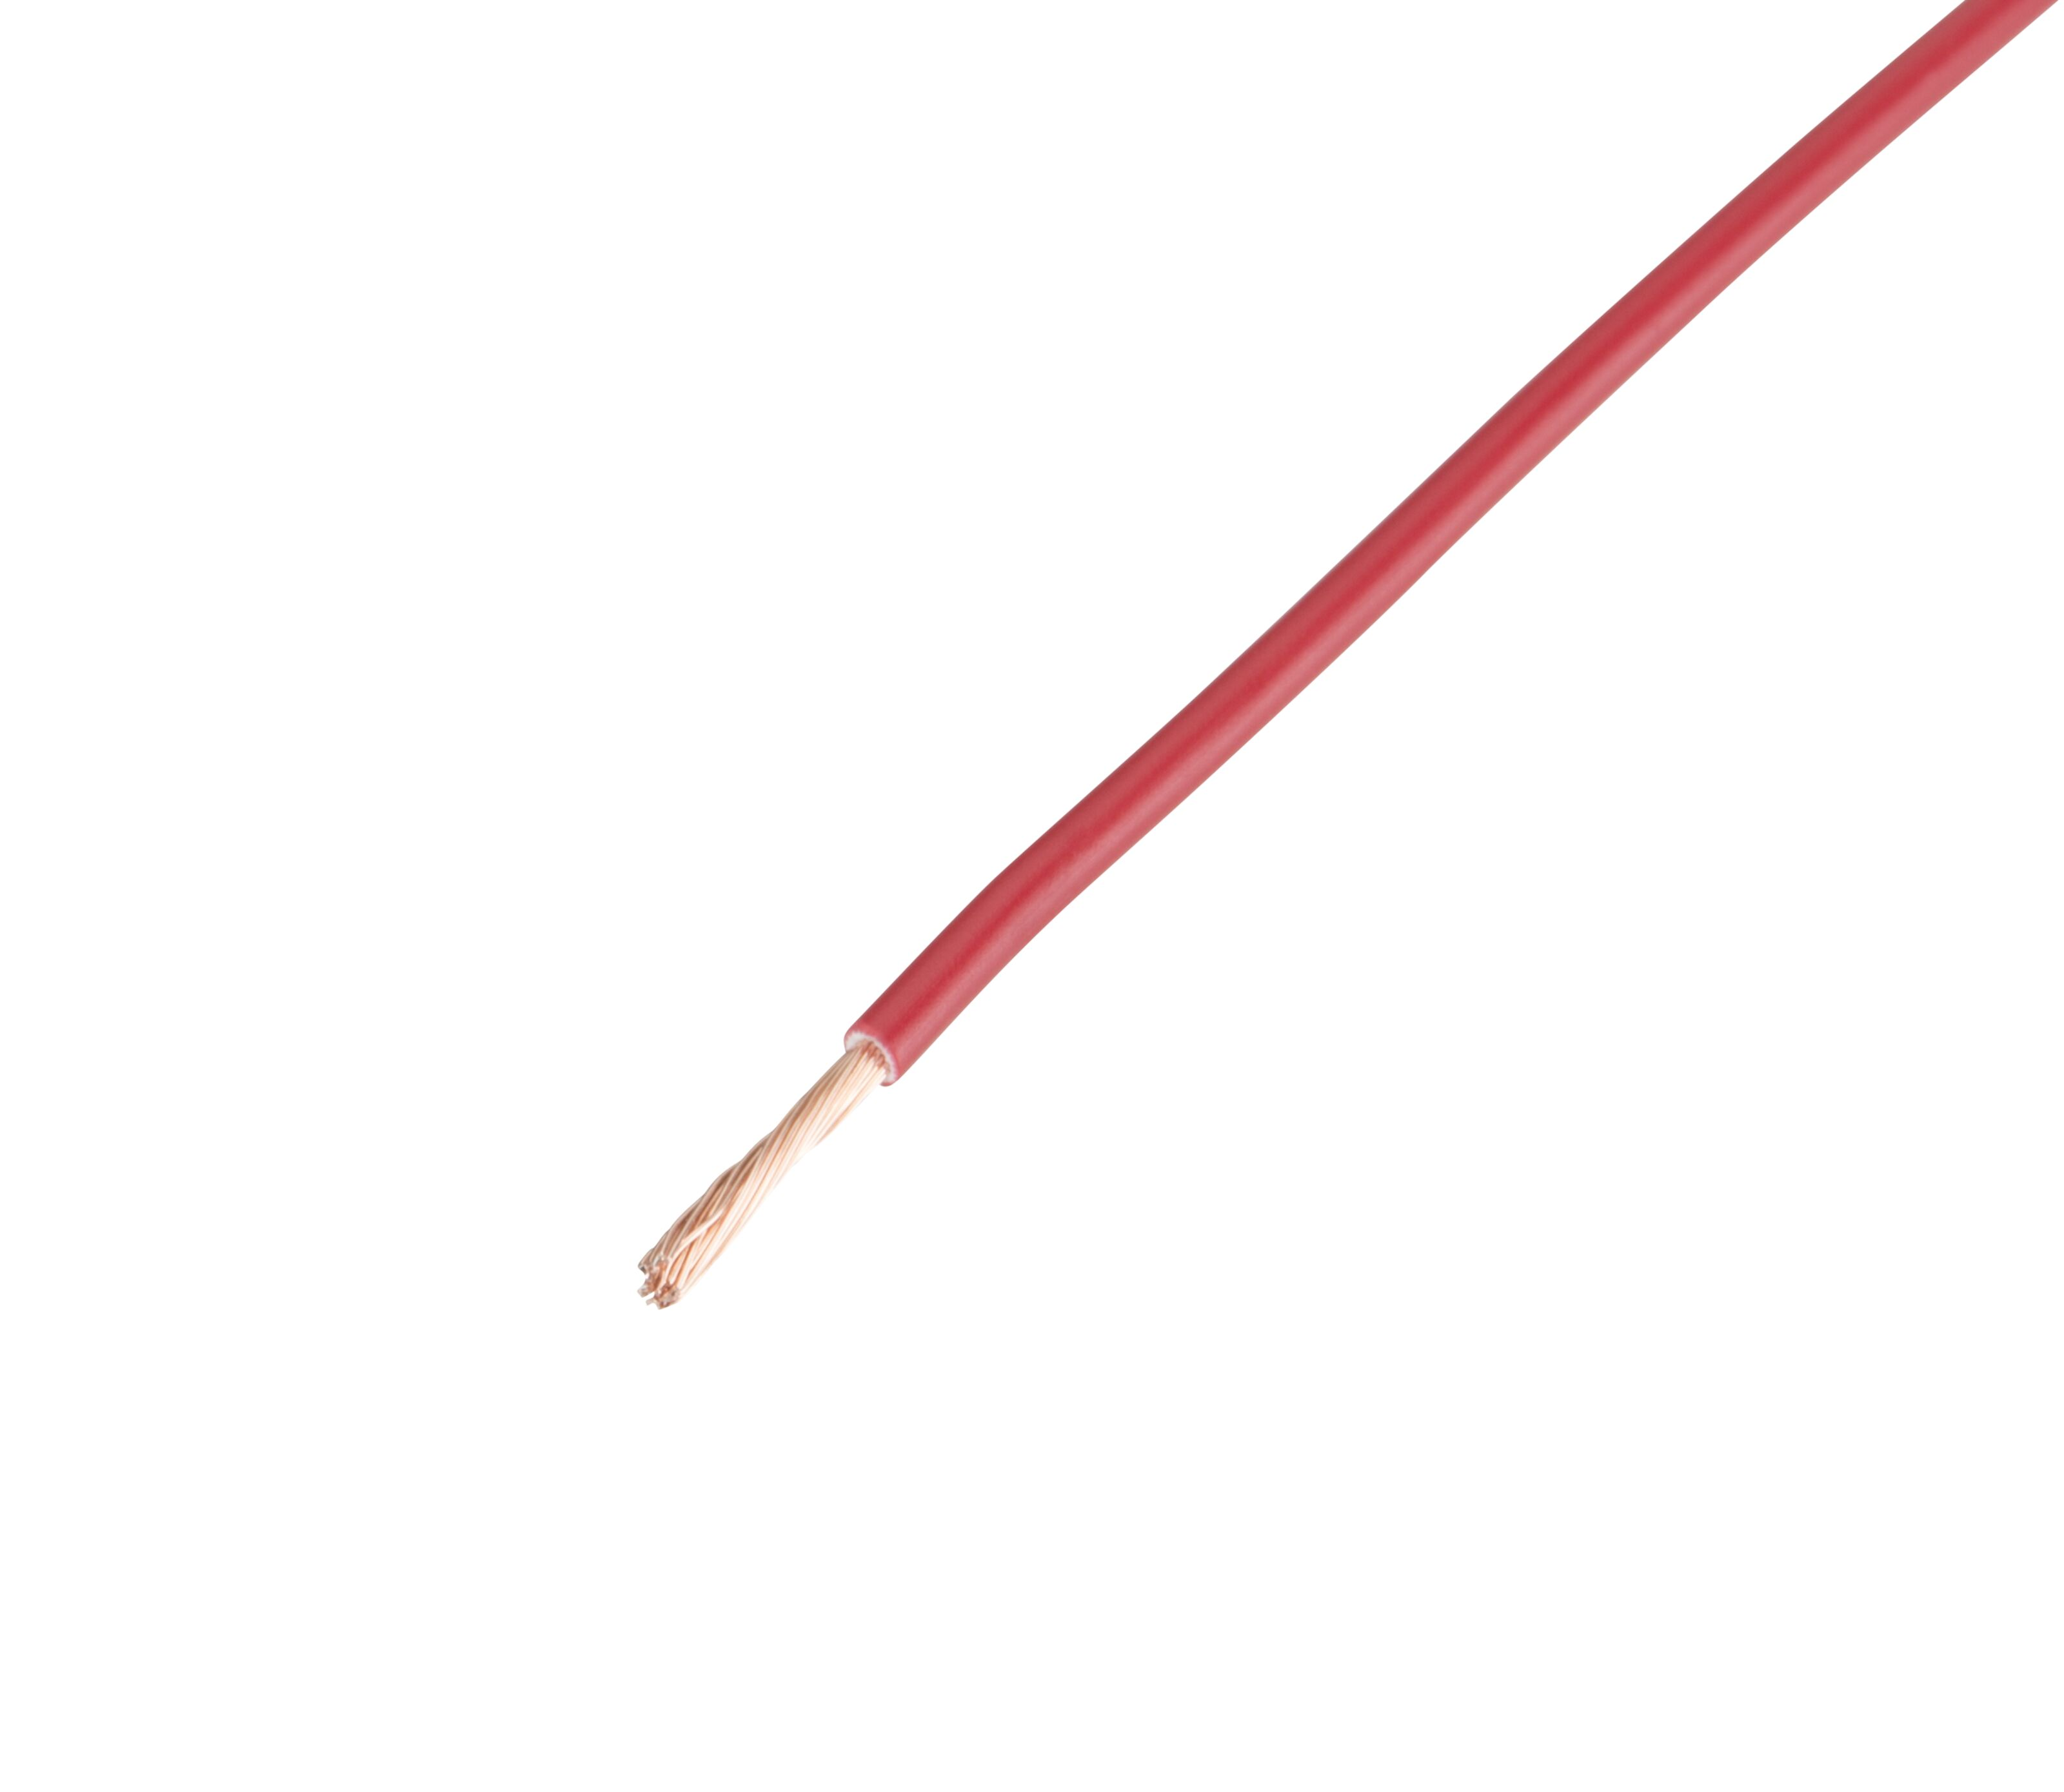 RKUB Lågspänningskabel 15 mm² Röd